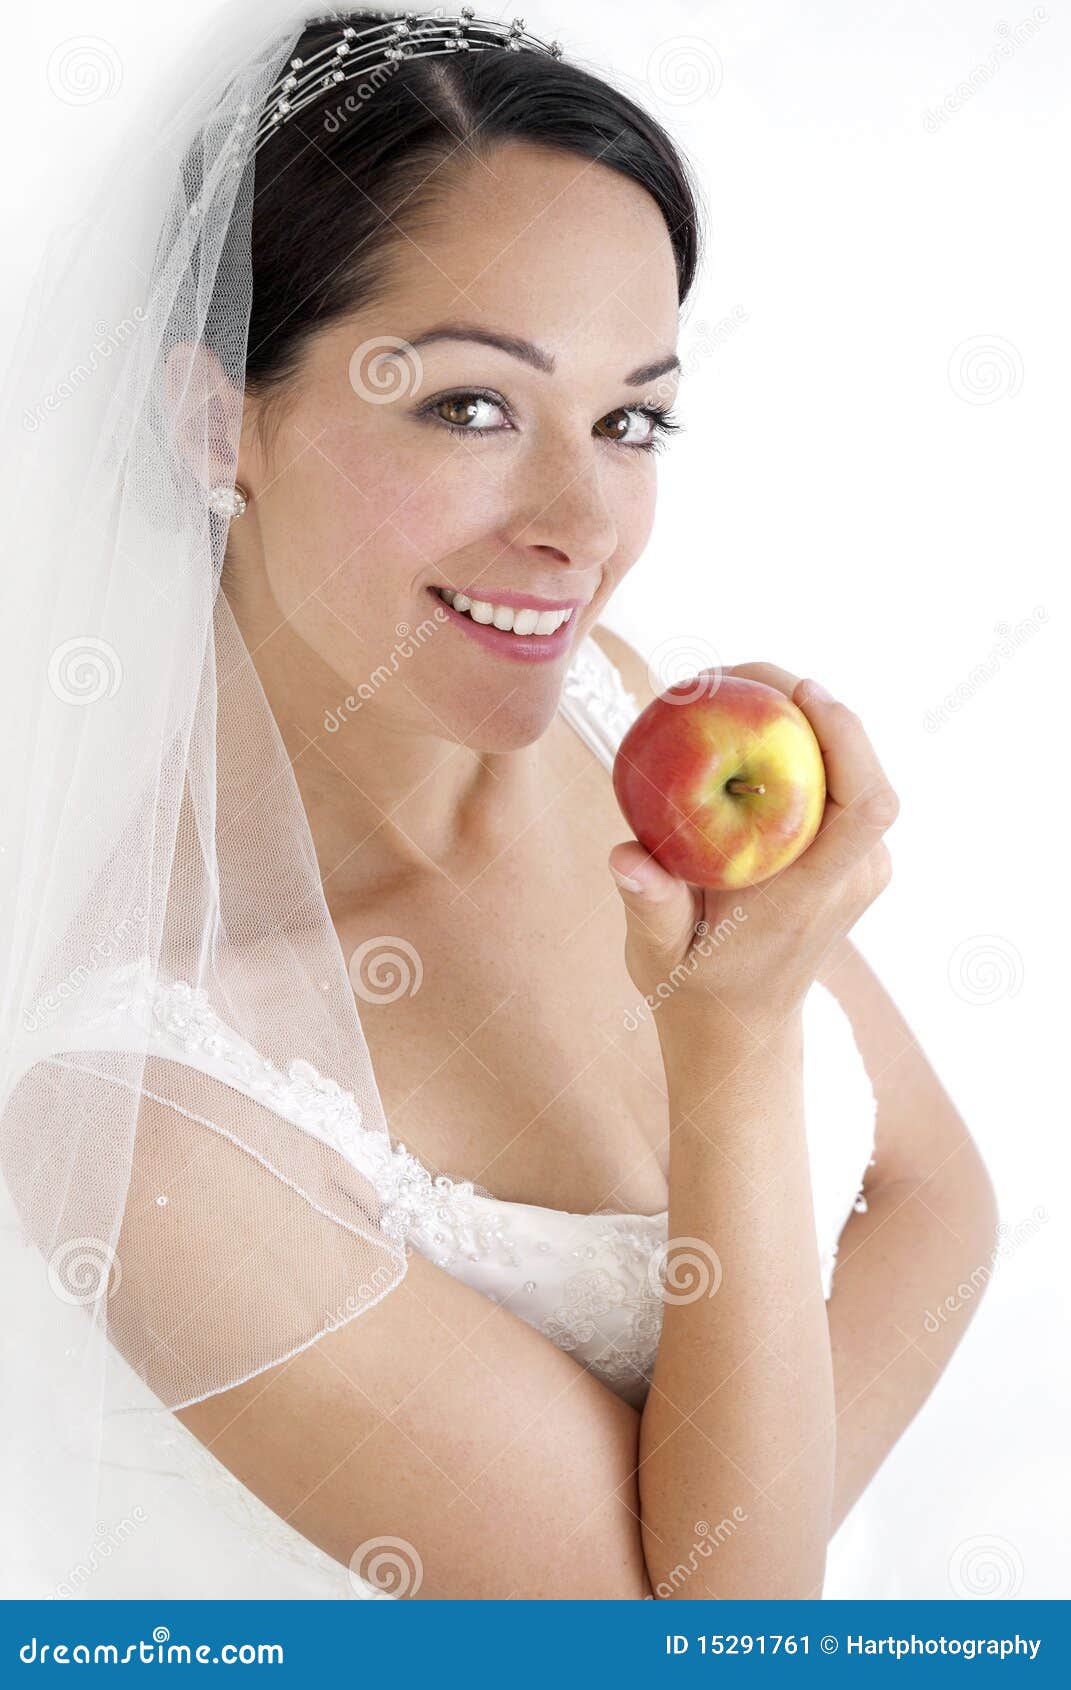 dieting bride